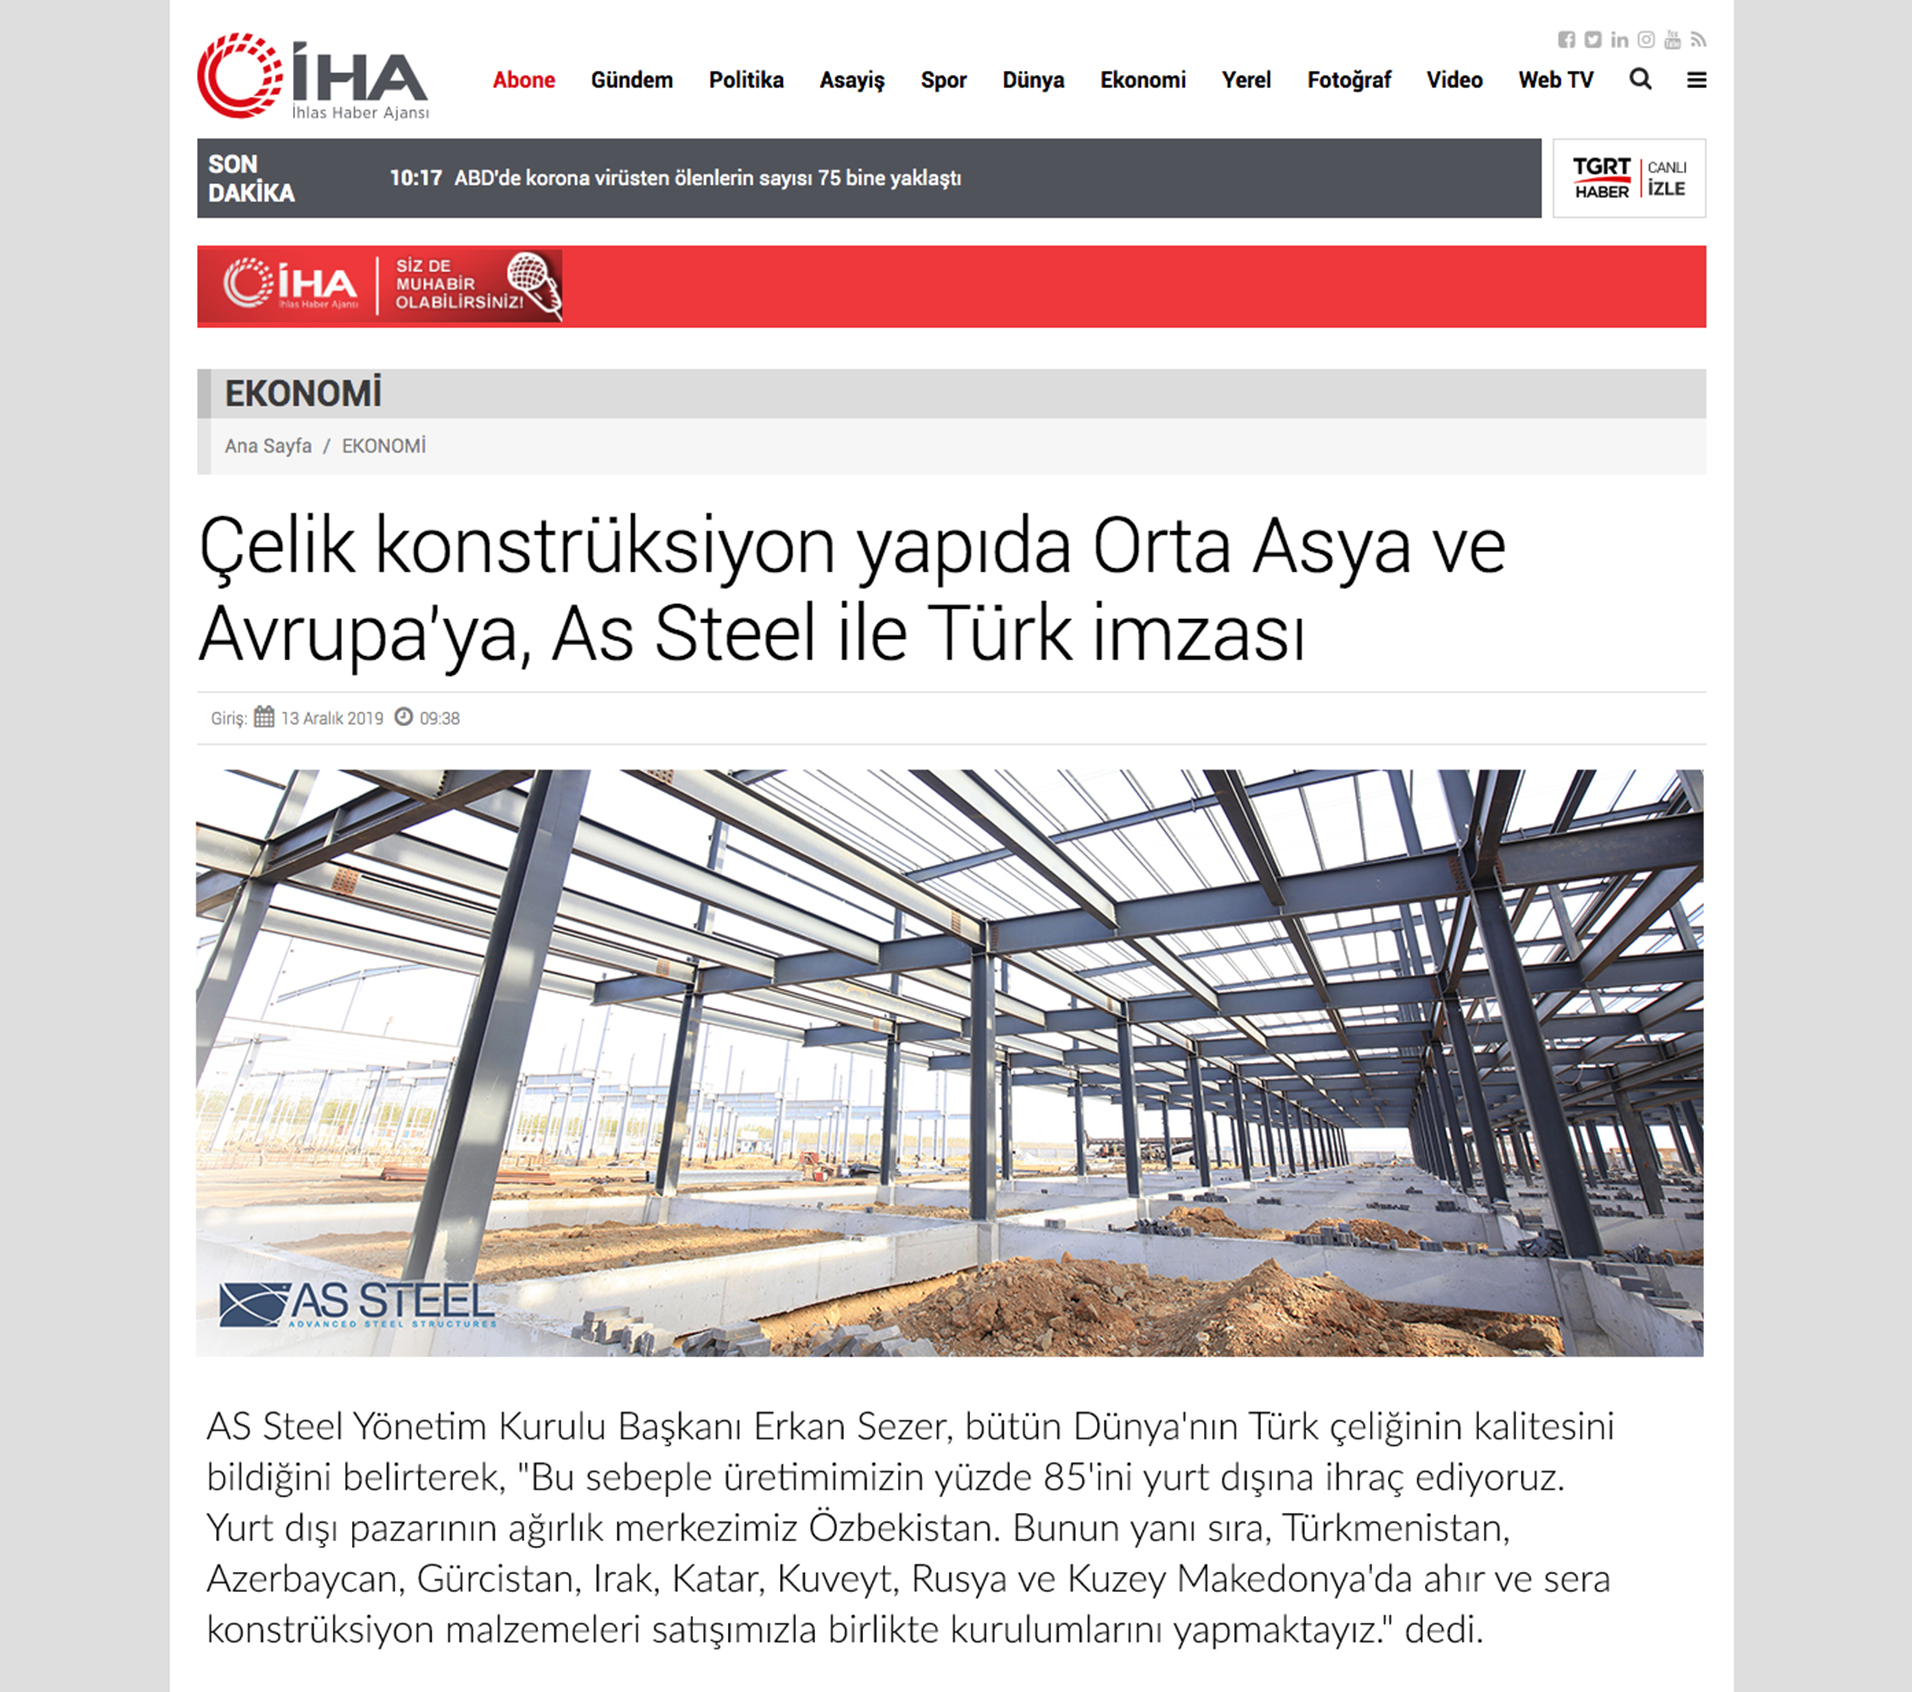 Турецкая подпись для Центральной Азии и Европы в стальных строительных конструкциях с As Steel